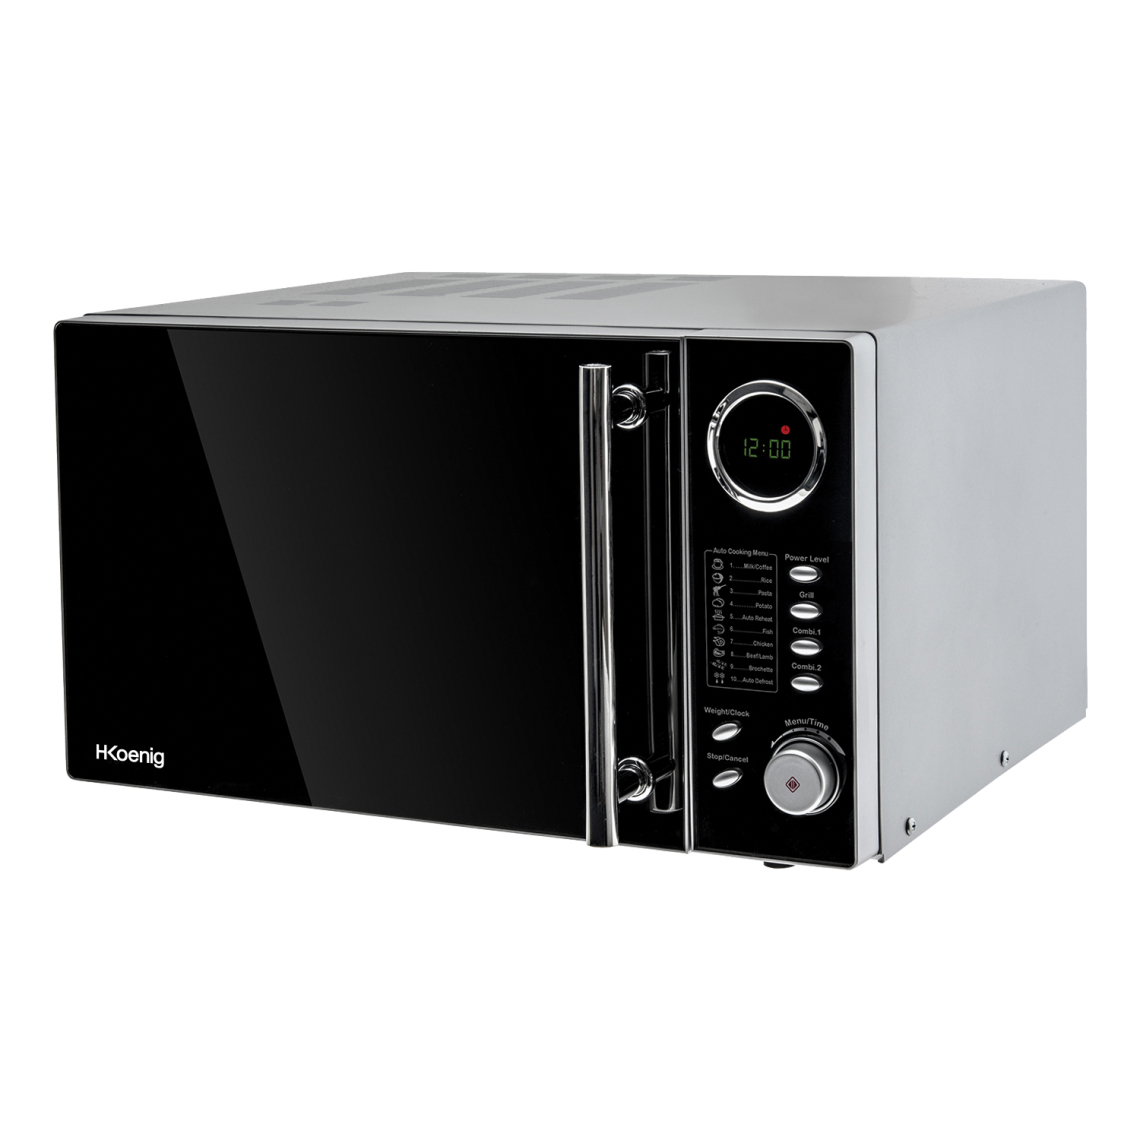 Hkoenig - Micro-ondes Grill 900W - Inox - VIO9 - Four micro-ondes